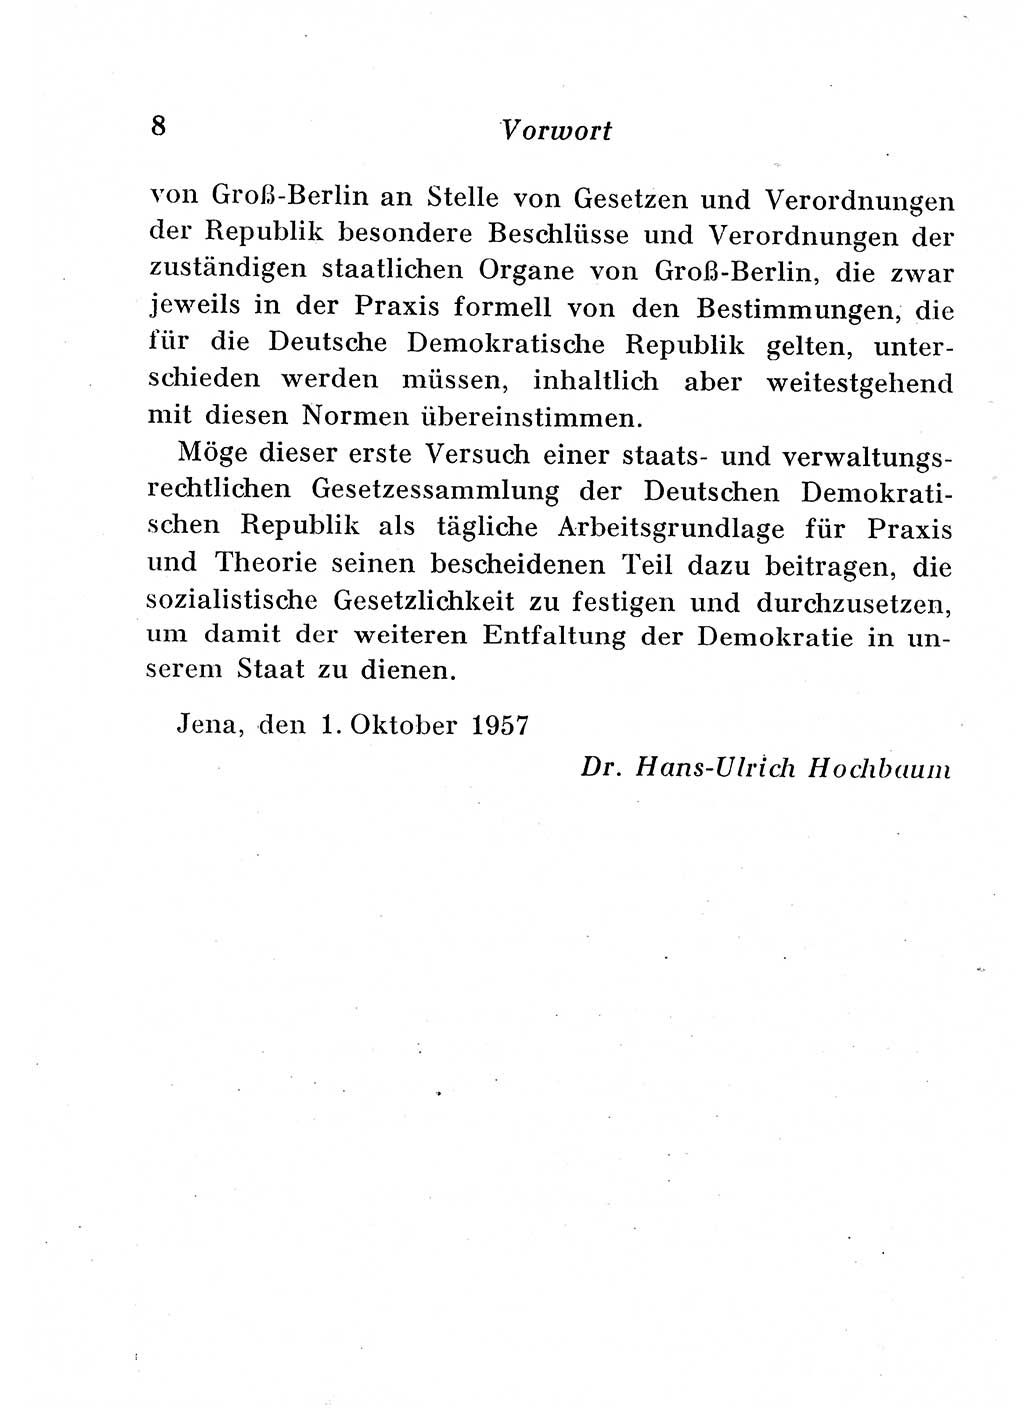 Staats- und verwaltungsrechtliche Gesetze der Deutschen Demokratischen Republik (DDR) 1958, Seite 8 (StVerwR Ges. DDR 1958, S. 8)